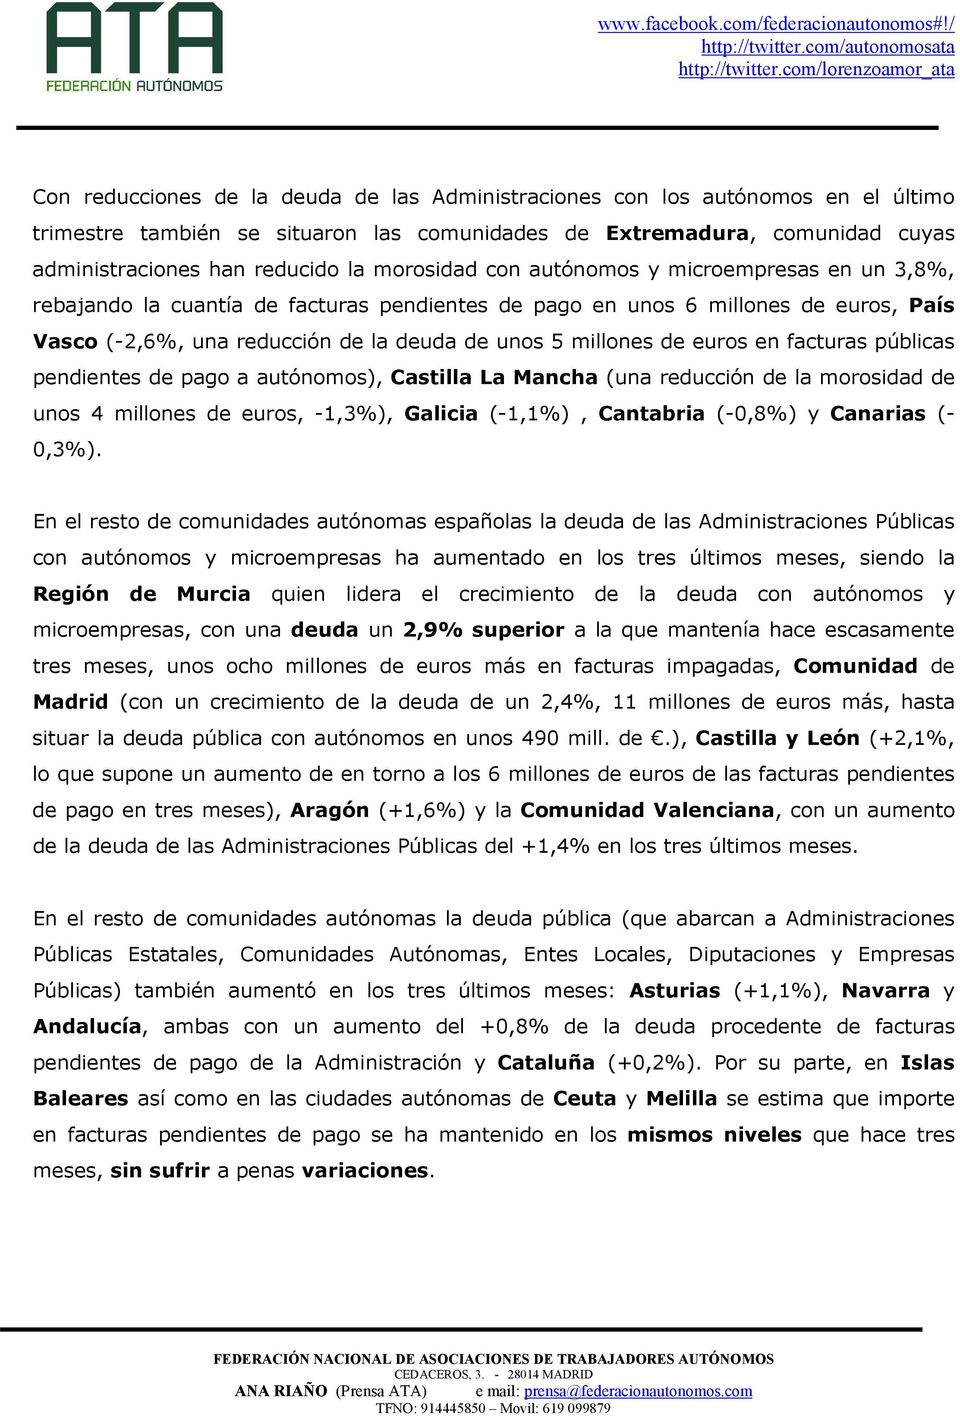 euros en facturas públicas pendientes de pago a autónomos), Castilla La Mancha (una reducción de la morosidad de unos 4 millones de euros, -1,3%), Galicia (-1,1%), Cantabria (-0,8%) y Canarias (-